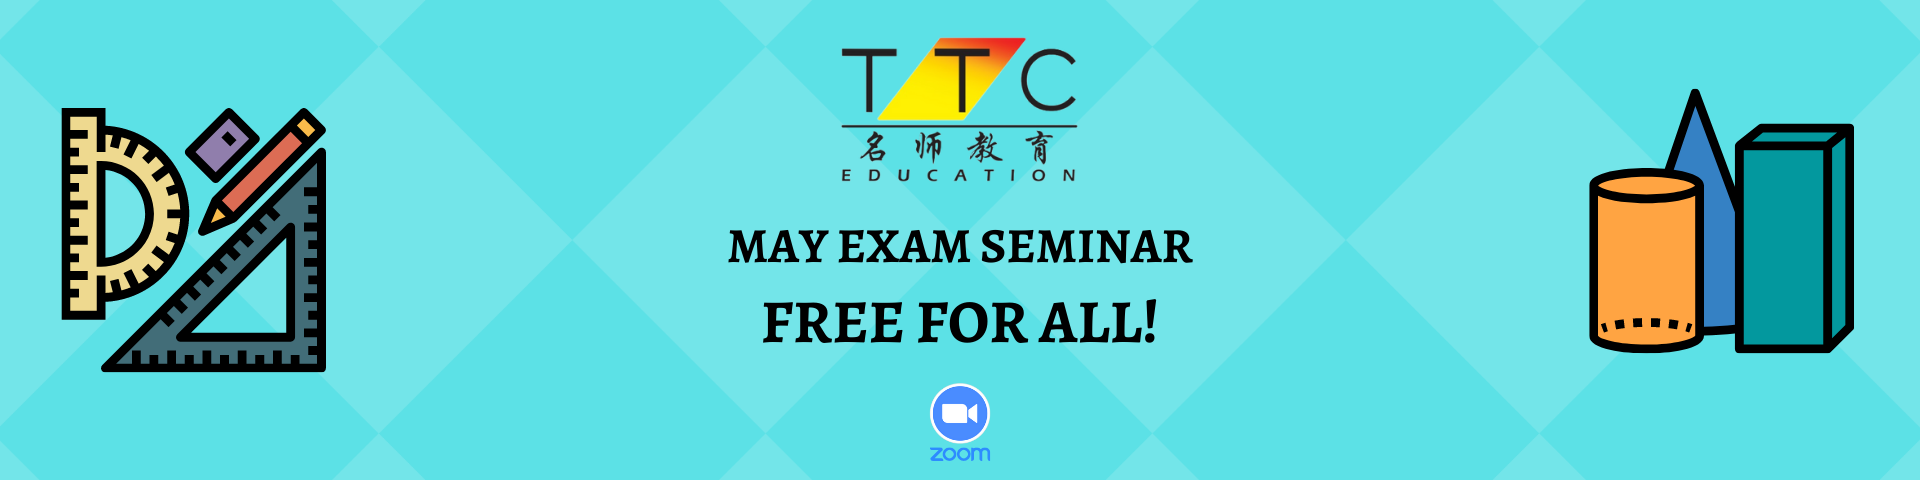 may exam free seminar